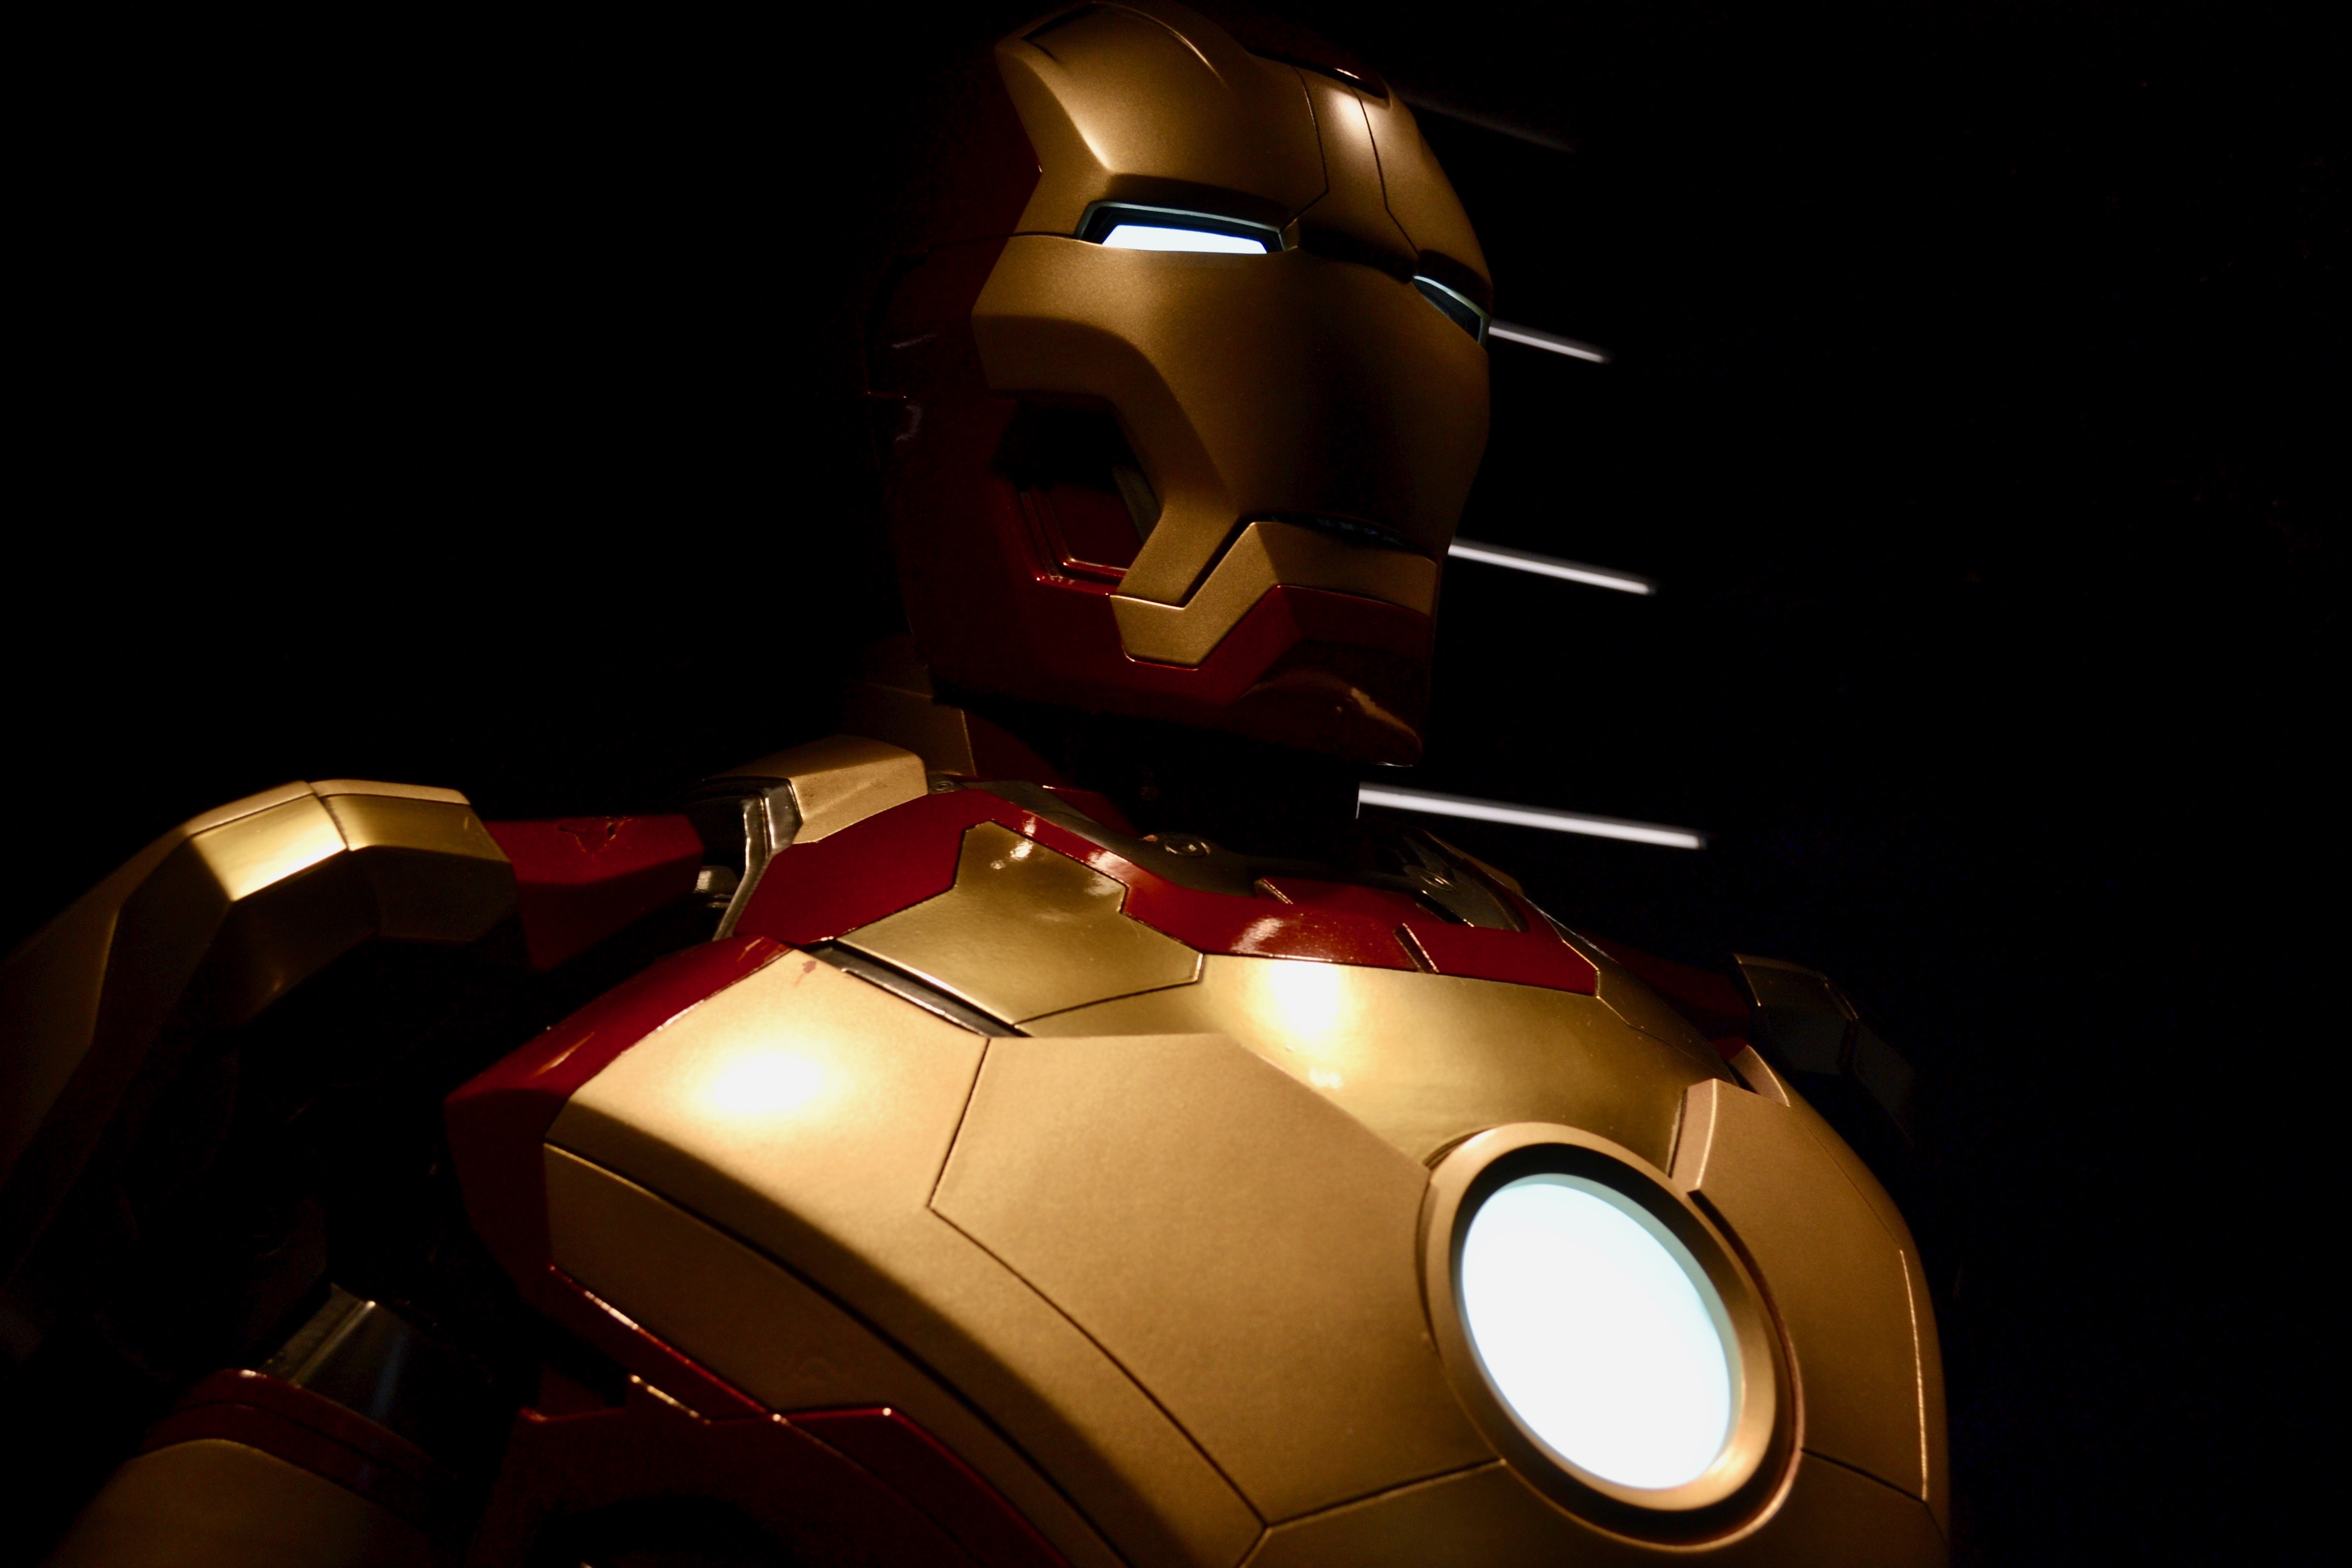 Iron Man Suit Close Up